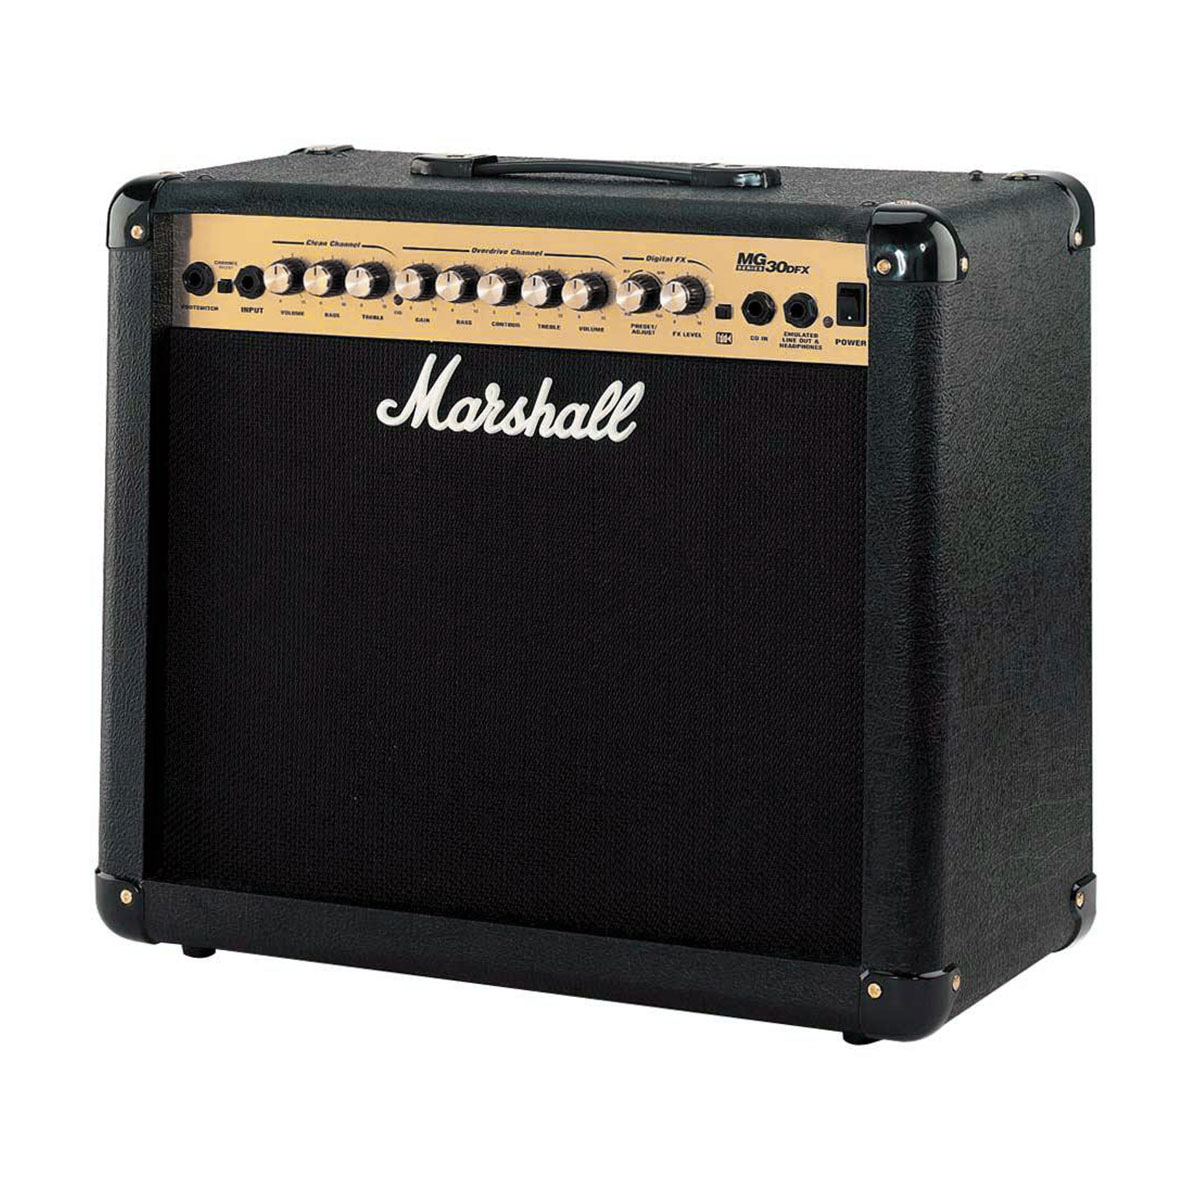 Marshall マーシャル ギターアンプ MG30DFX 30Wギターアンプ - アンプ